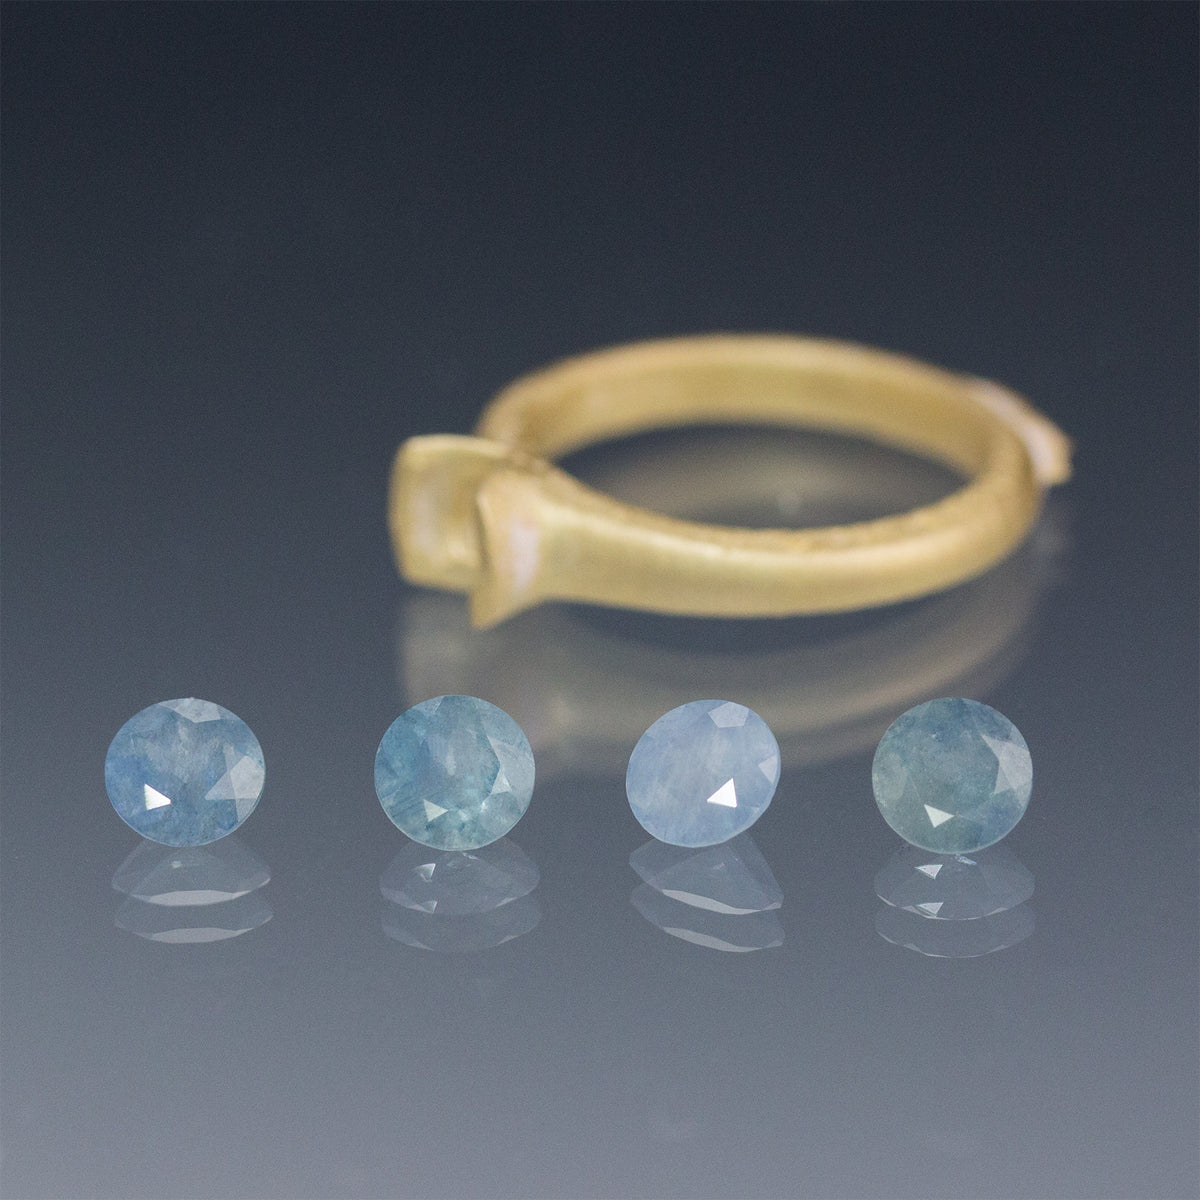 Fair Trade Blue Montana Sapphire Semi Bezel Engagement Ring - Stellar Fields